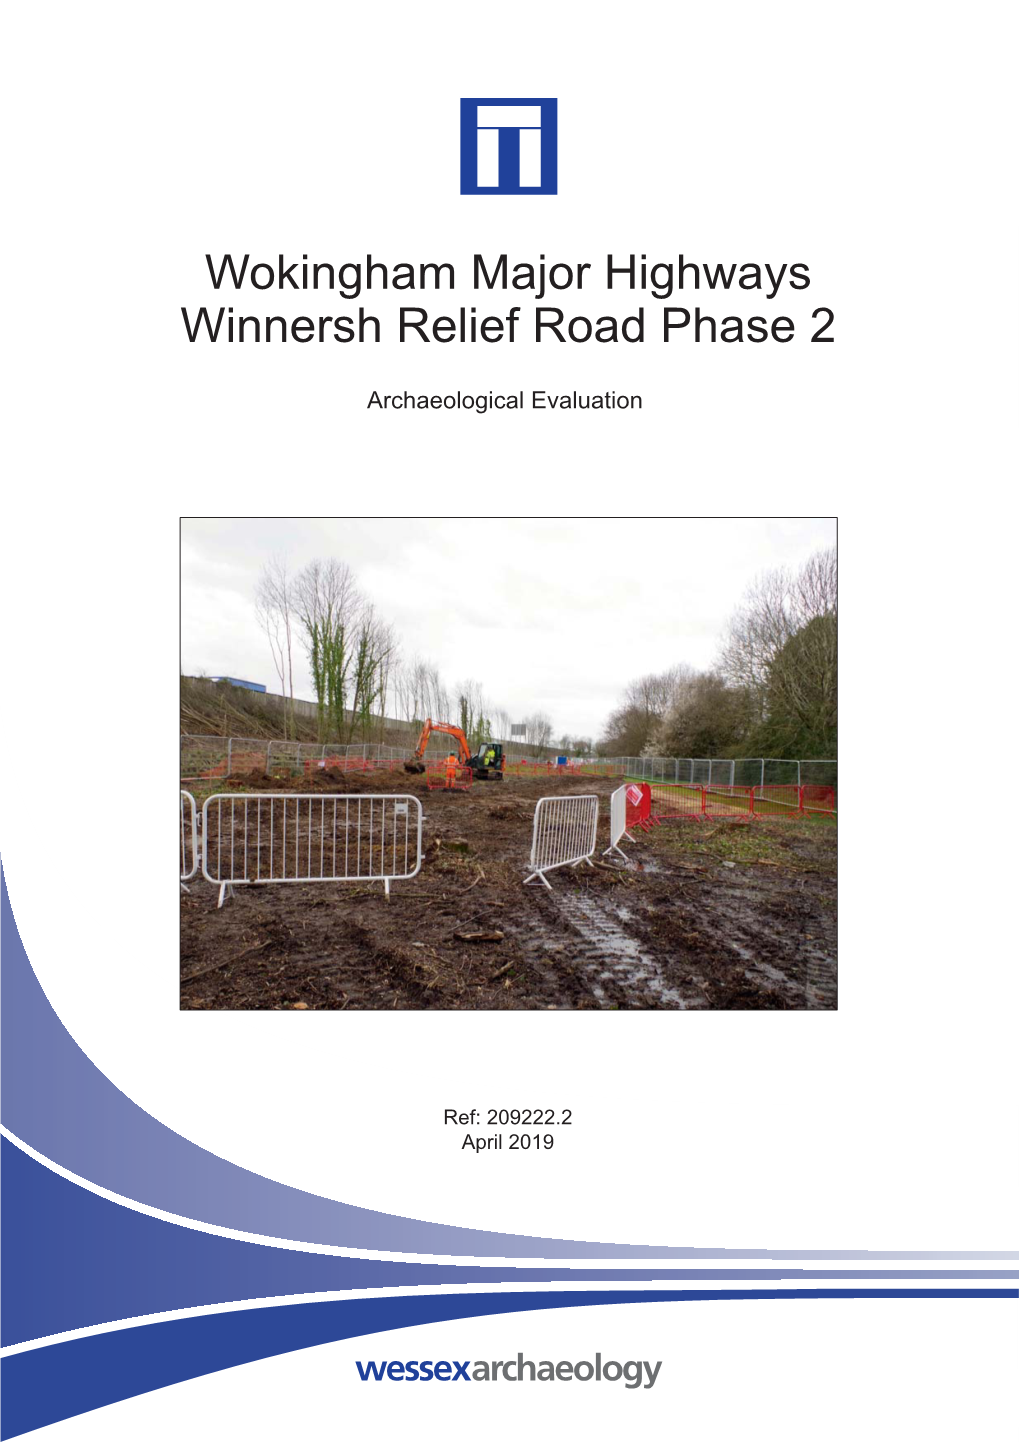 Wokingham Major Highways Winnersh Relief Road Phase 2